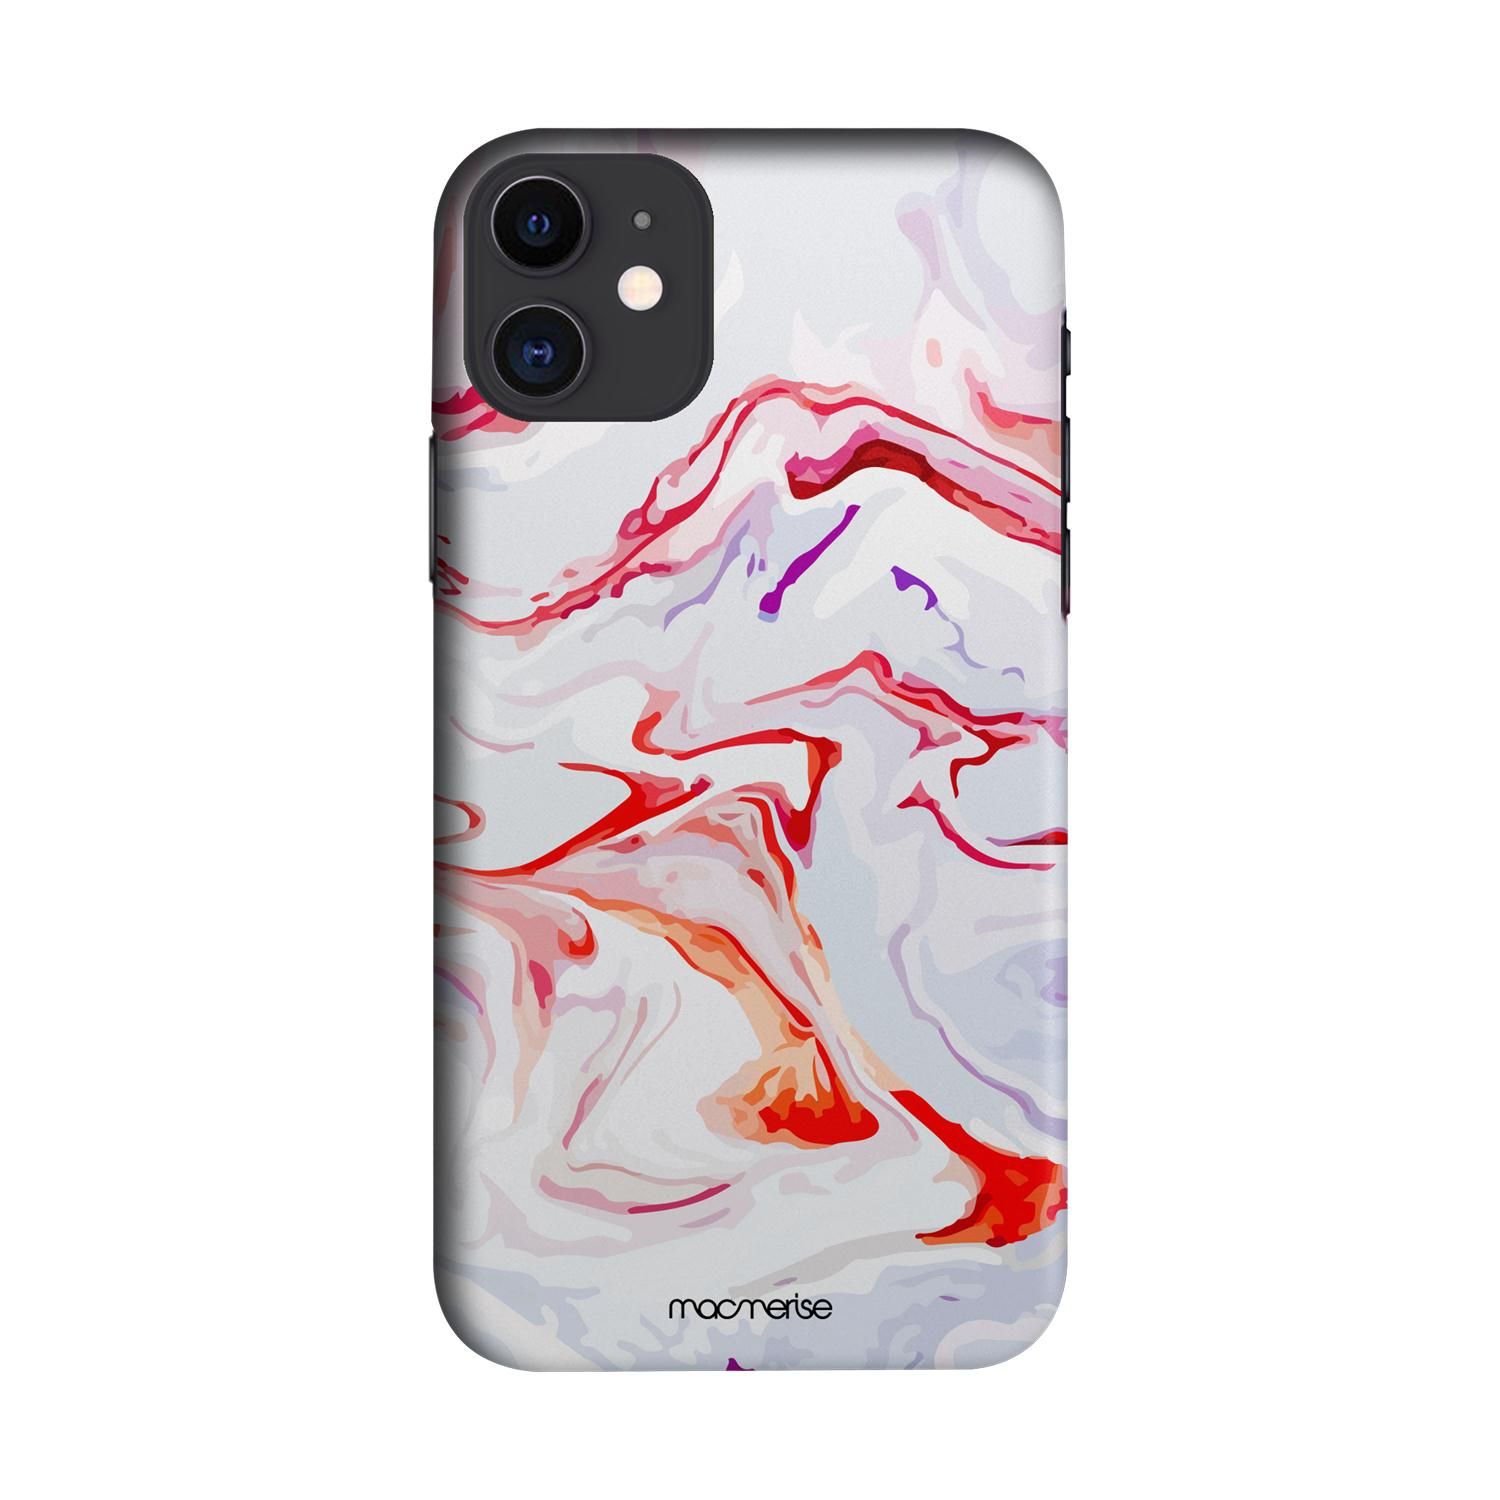 Buy Liquid Funk Marble - Sleek Phone Case for iPhone 11 Online